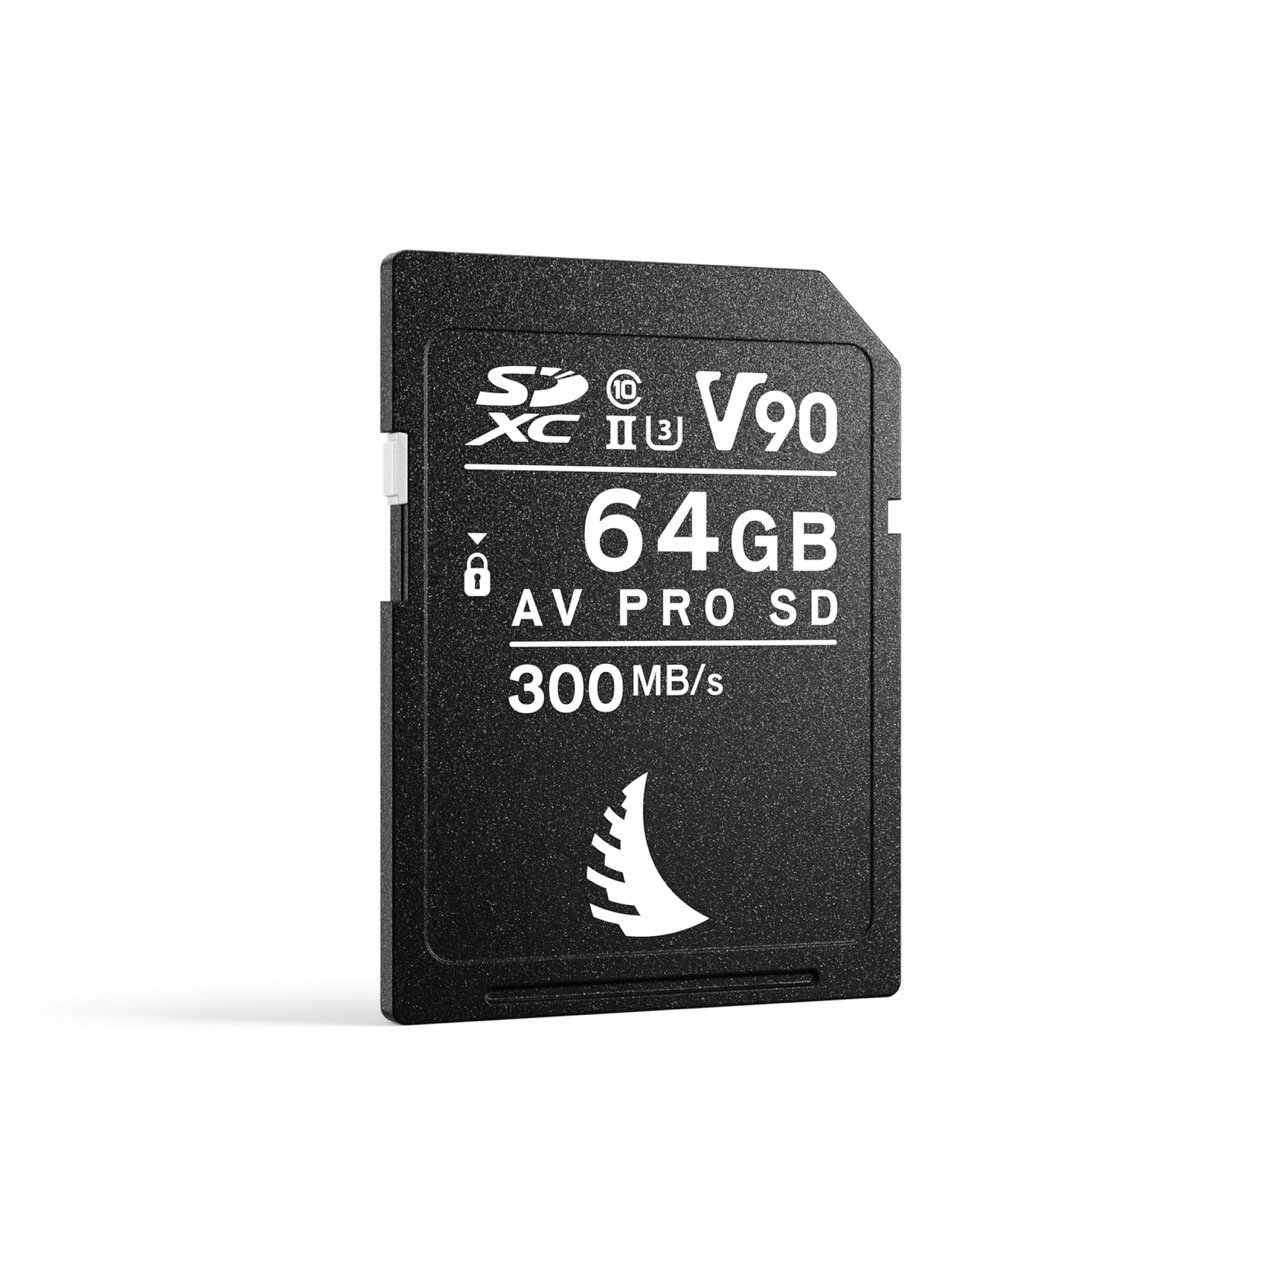 AV PRO SD V90 MK2 64 GB